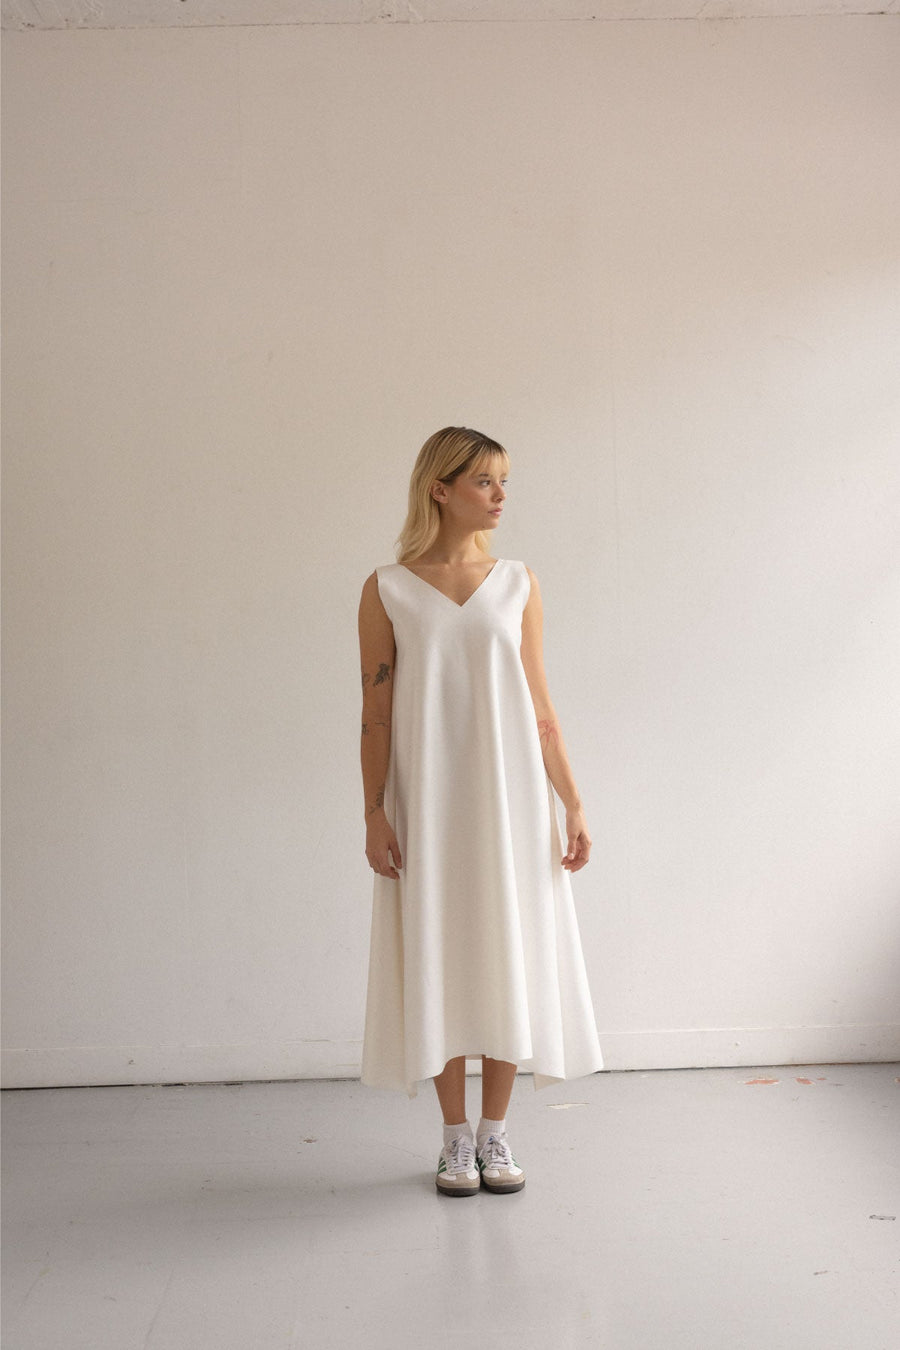 Linea ivory dress